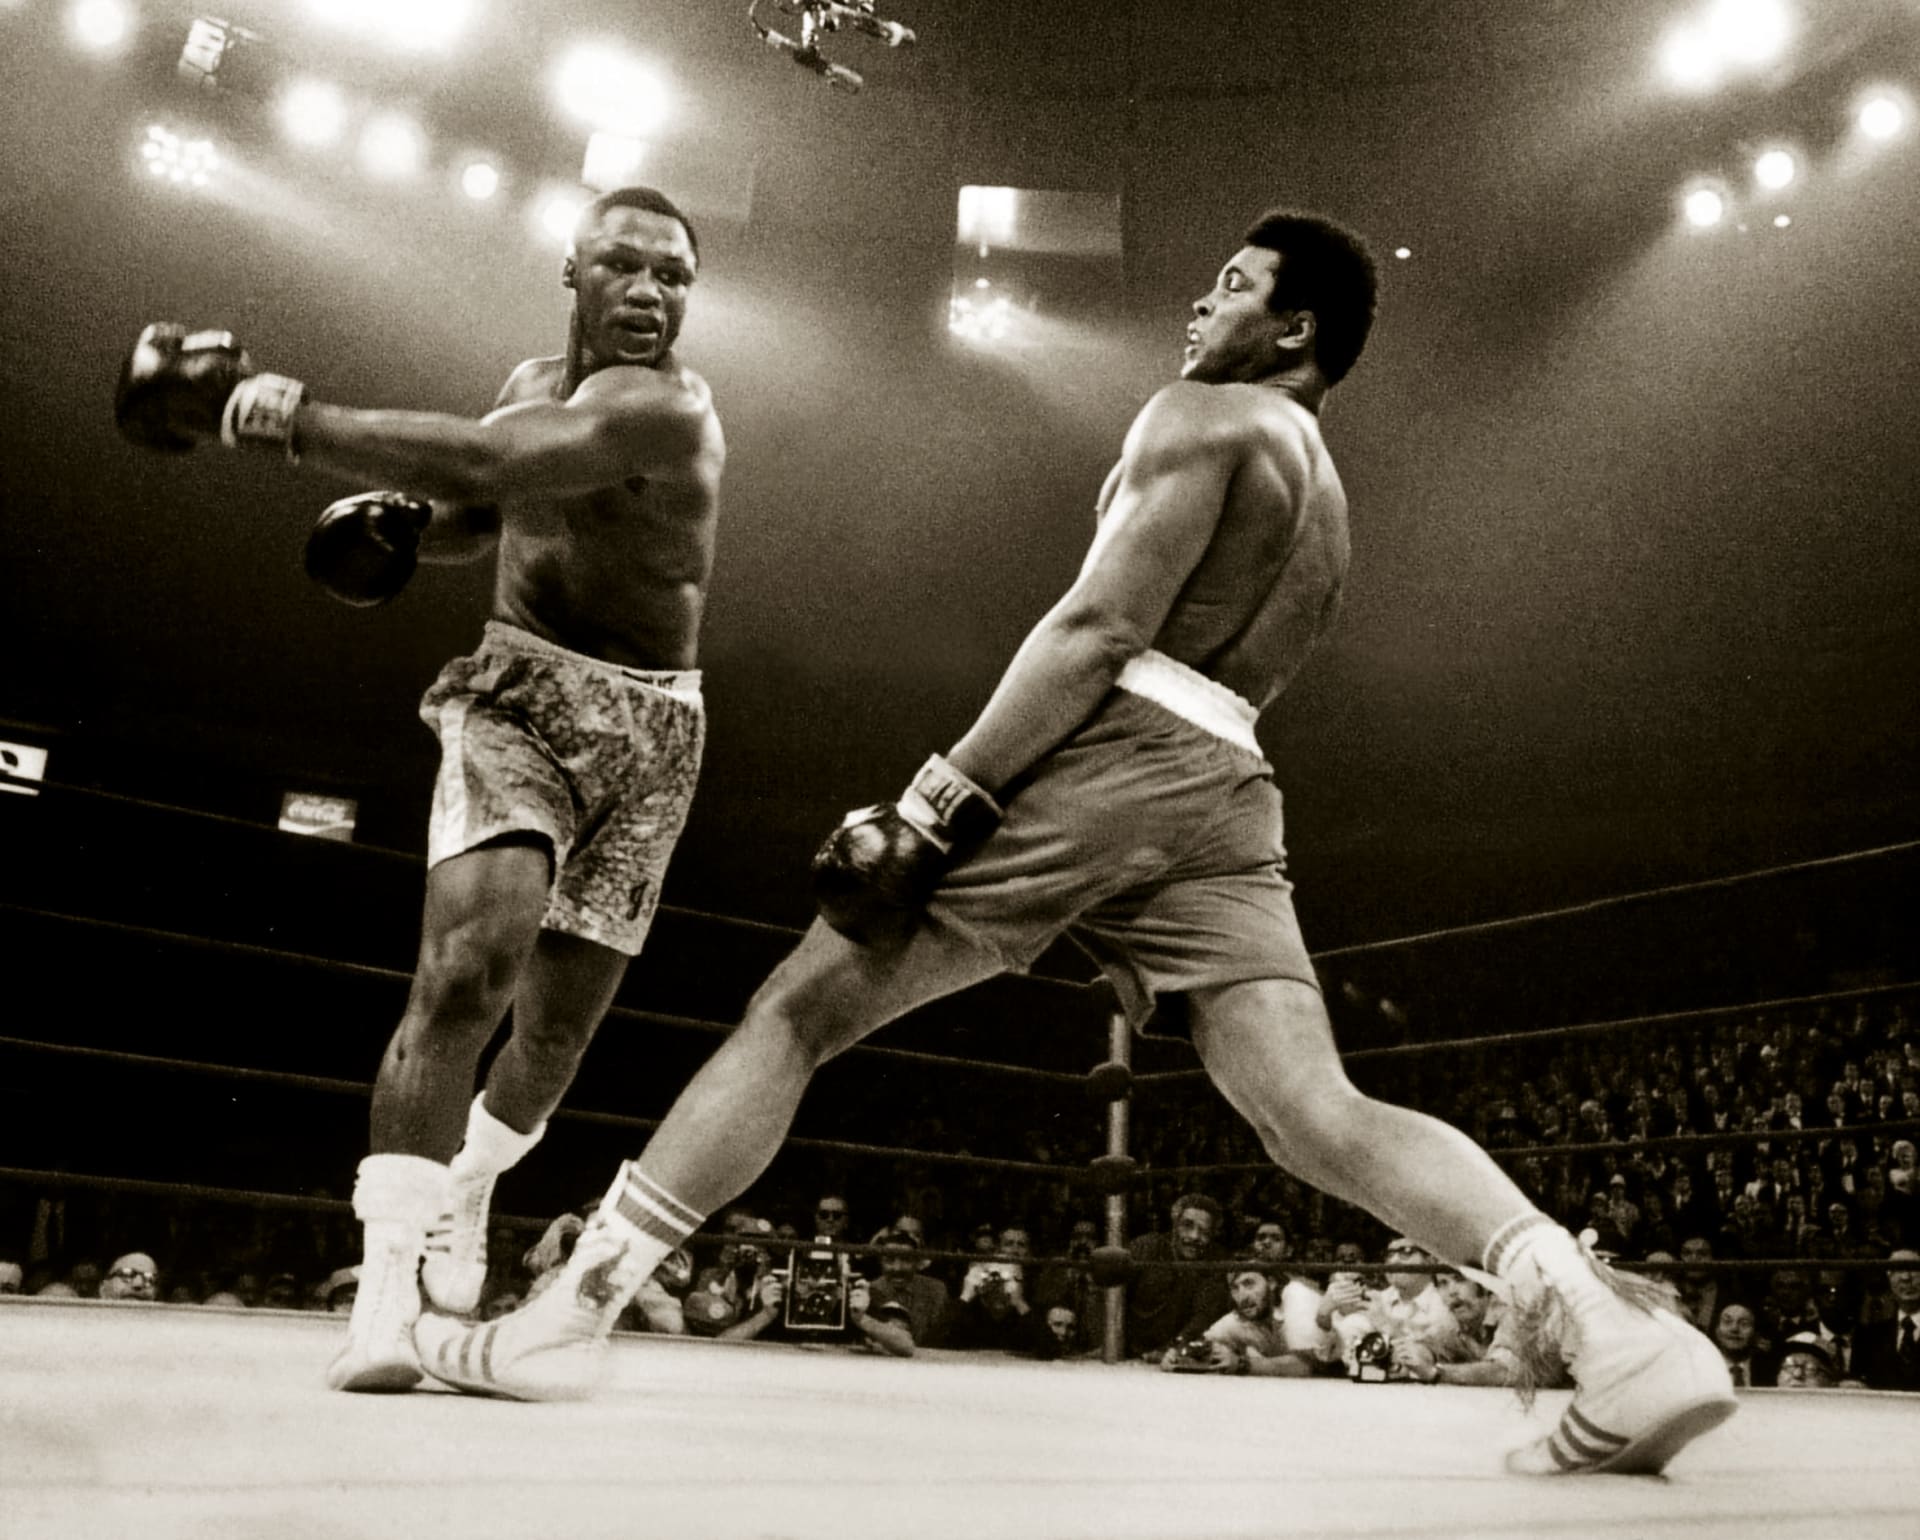 Historii boxu psali také Joe Frazier (vlevo) a Muhammad Ali, kteří poměřili síly v utkání, které vešlo do dějin jako Zápas století.